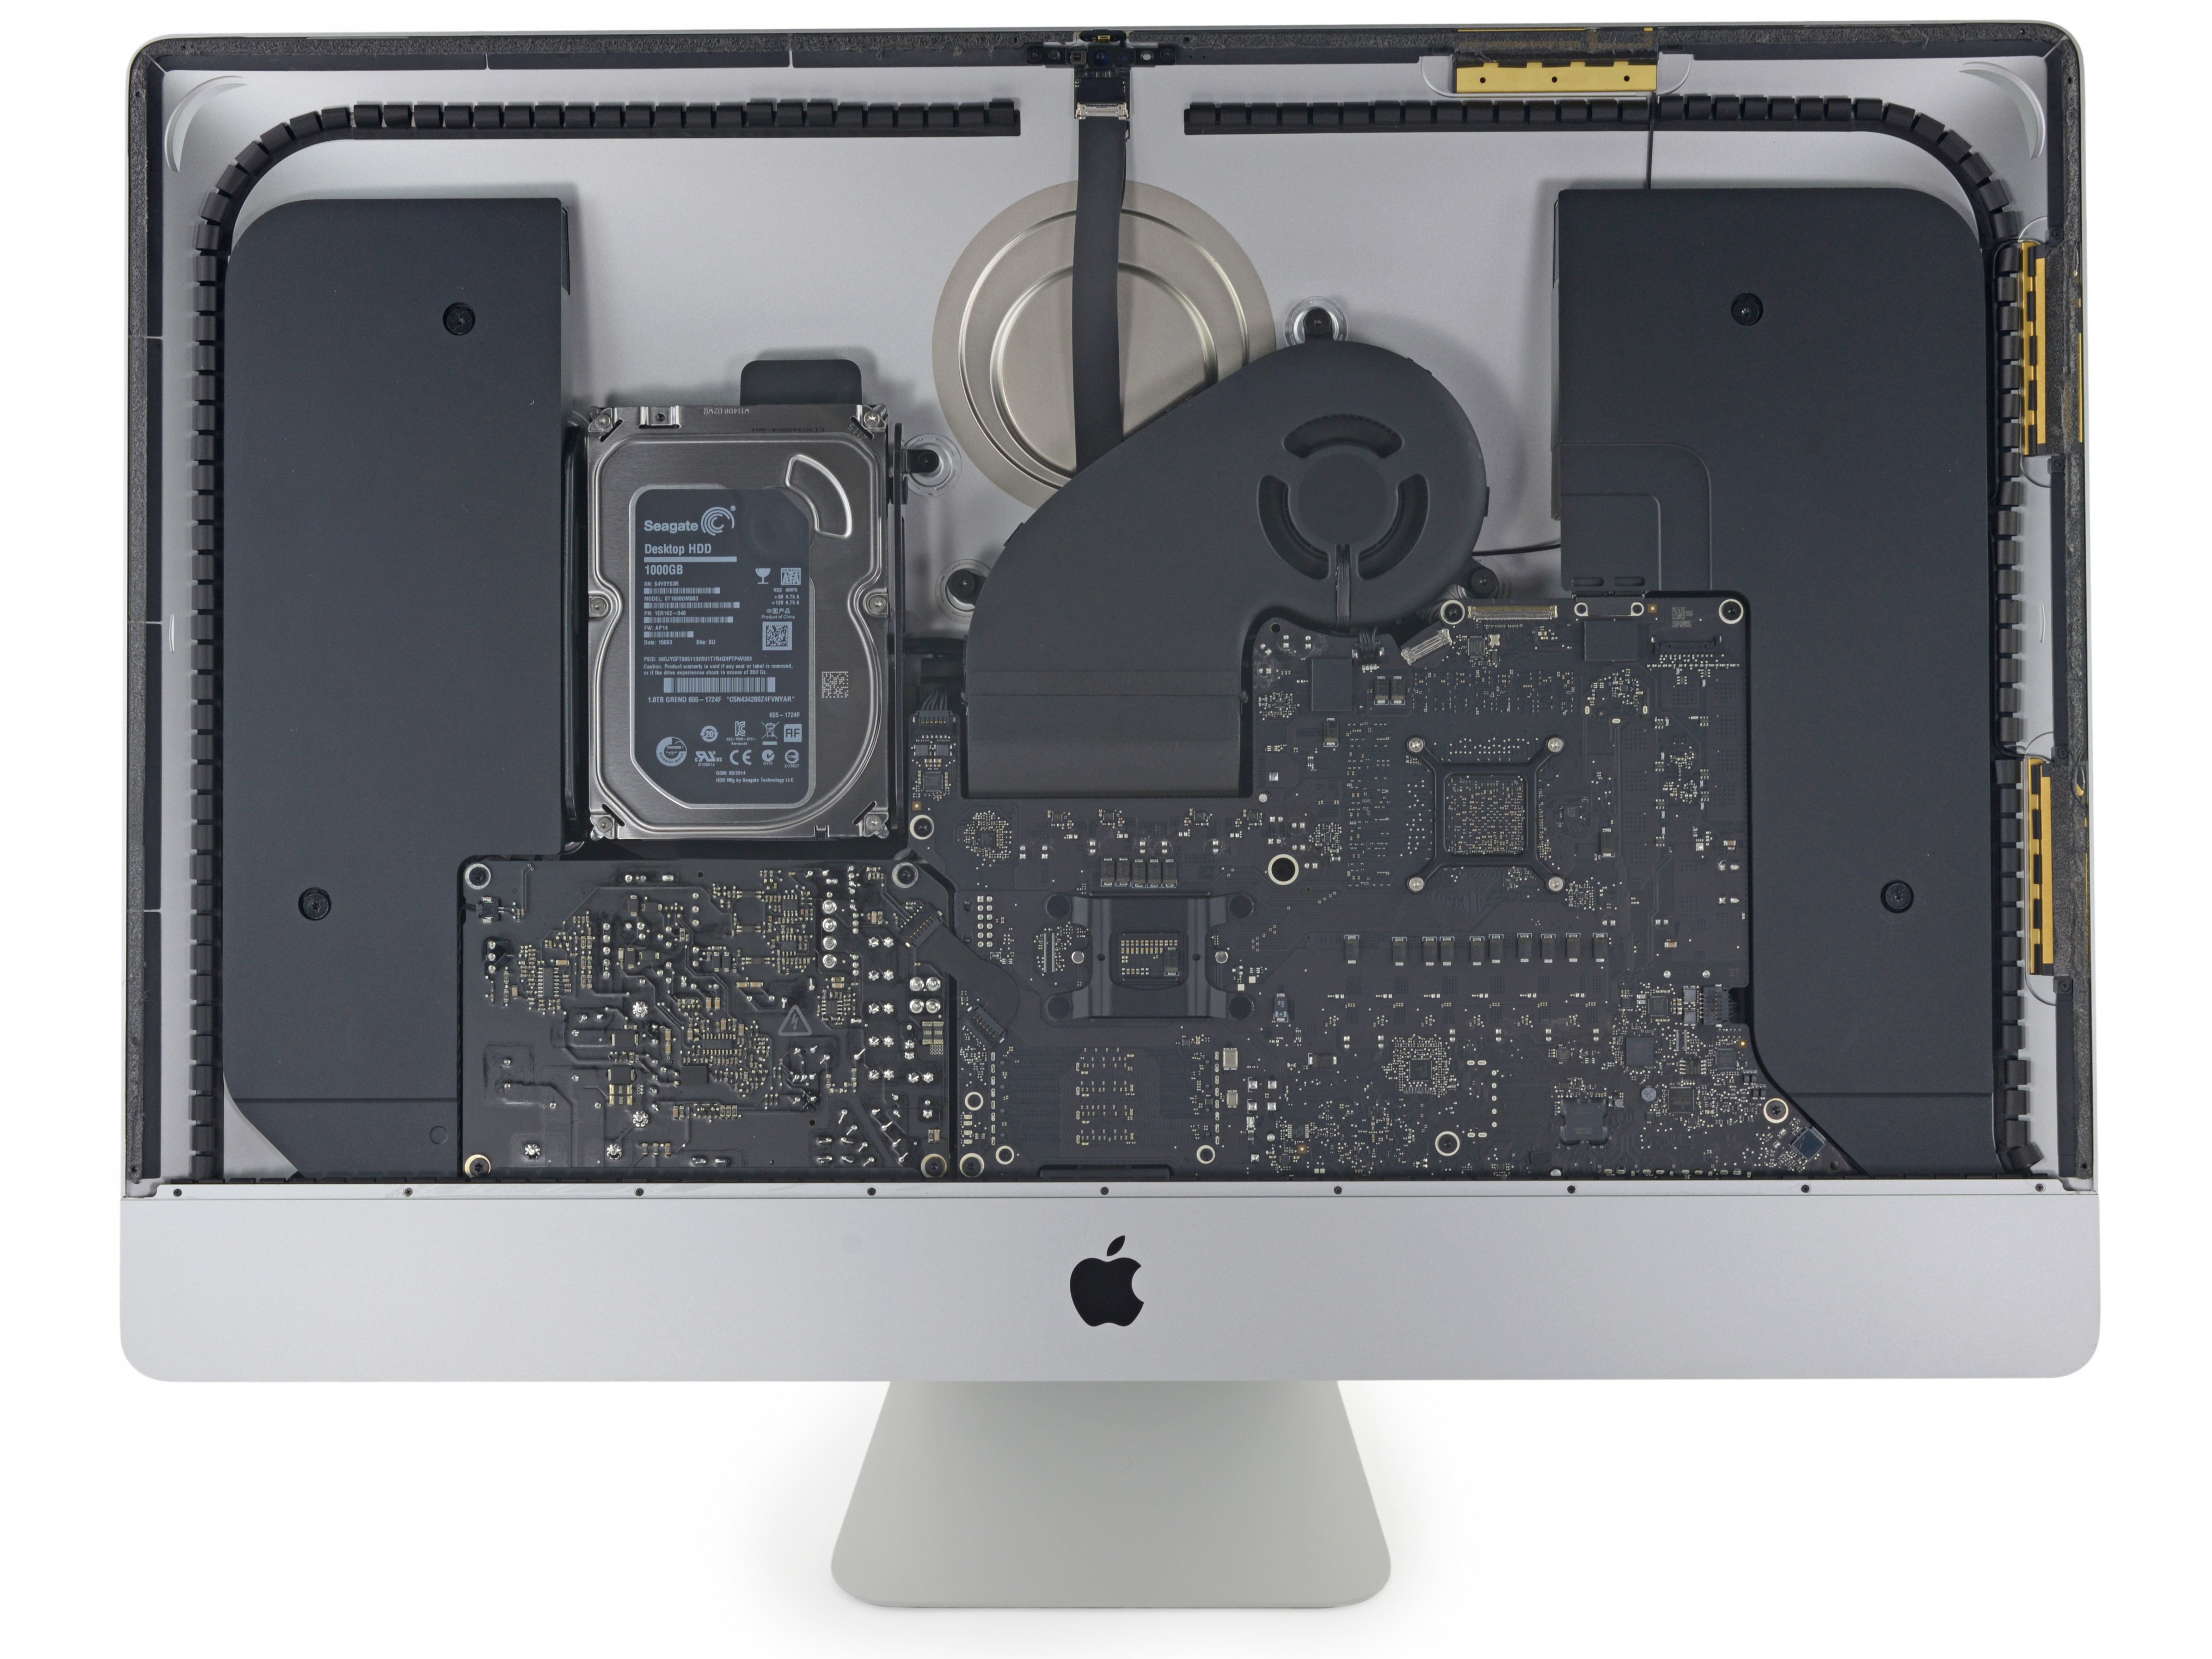 iMac Retina Display 5K es desmantelada por iFixit